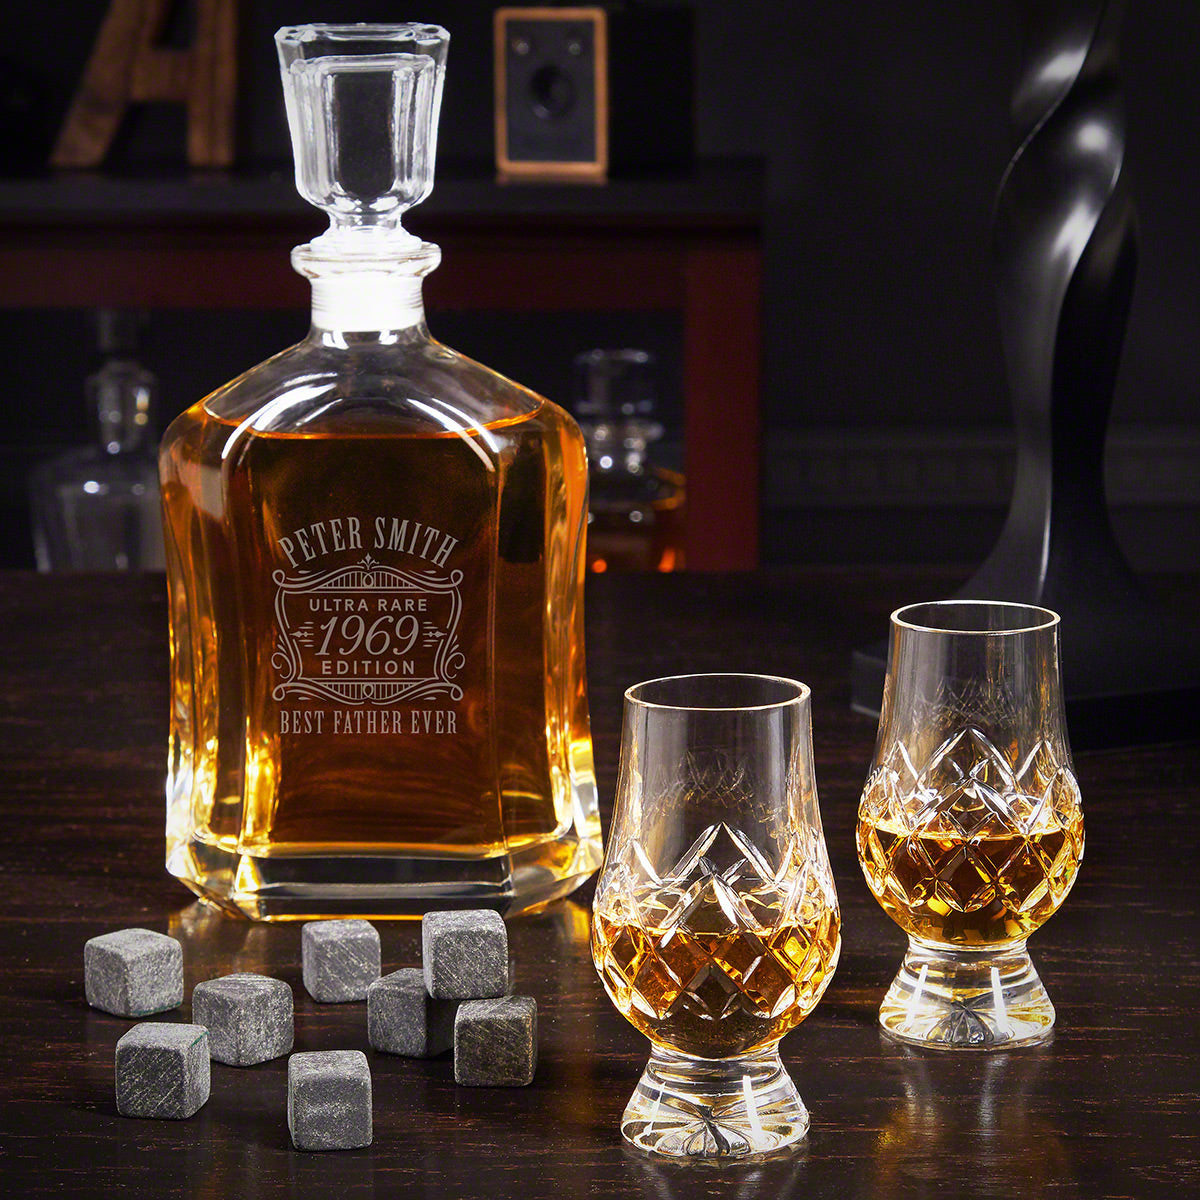 Custom Argos Whiskey Decanter Set with Crystal Glencairn Glasses